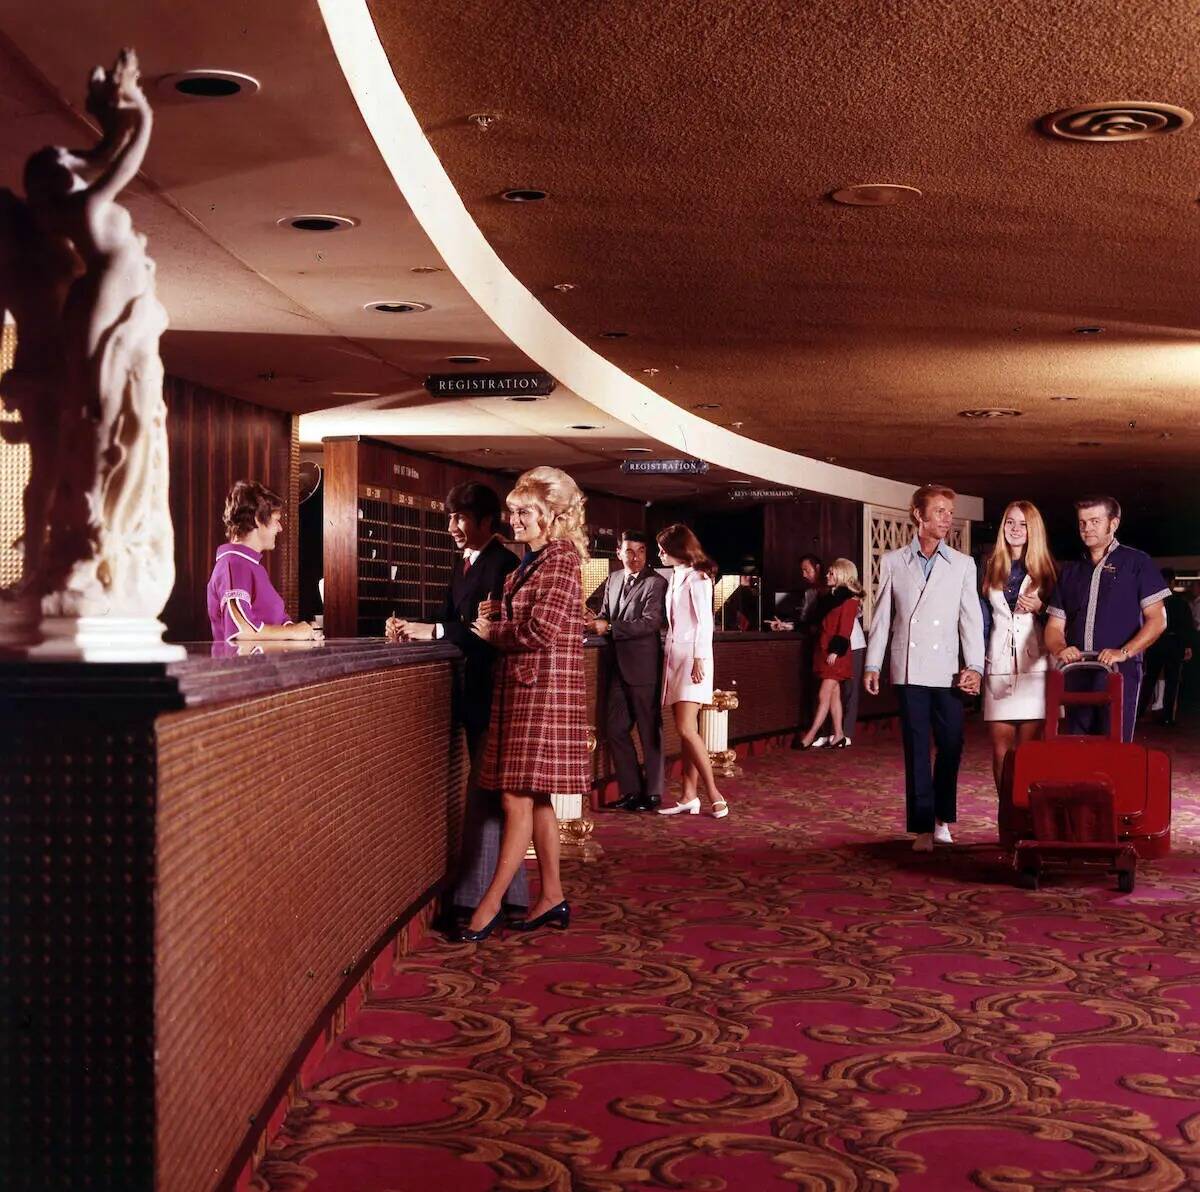 El diseño del mobiliario del Caesars Palace en 1966 representa el Modernismo Rococó, un estil ...